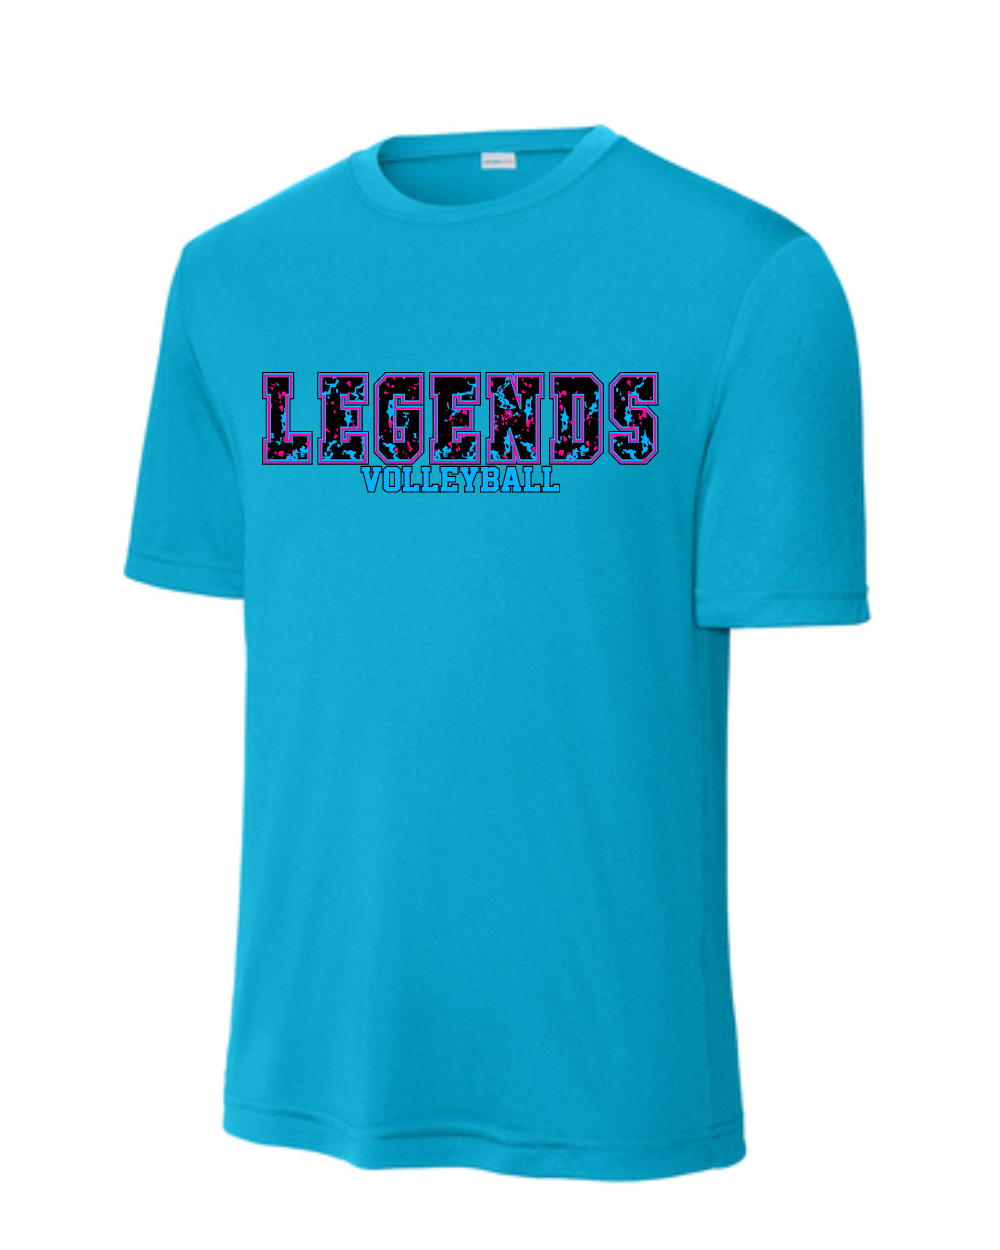 BSA-Legends Volleyball Performance Tee-Blue